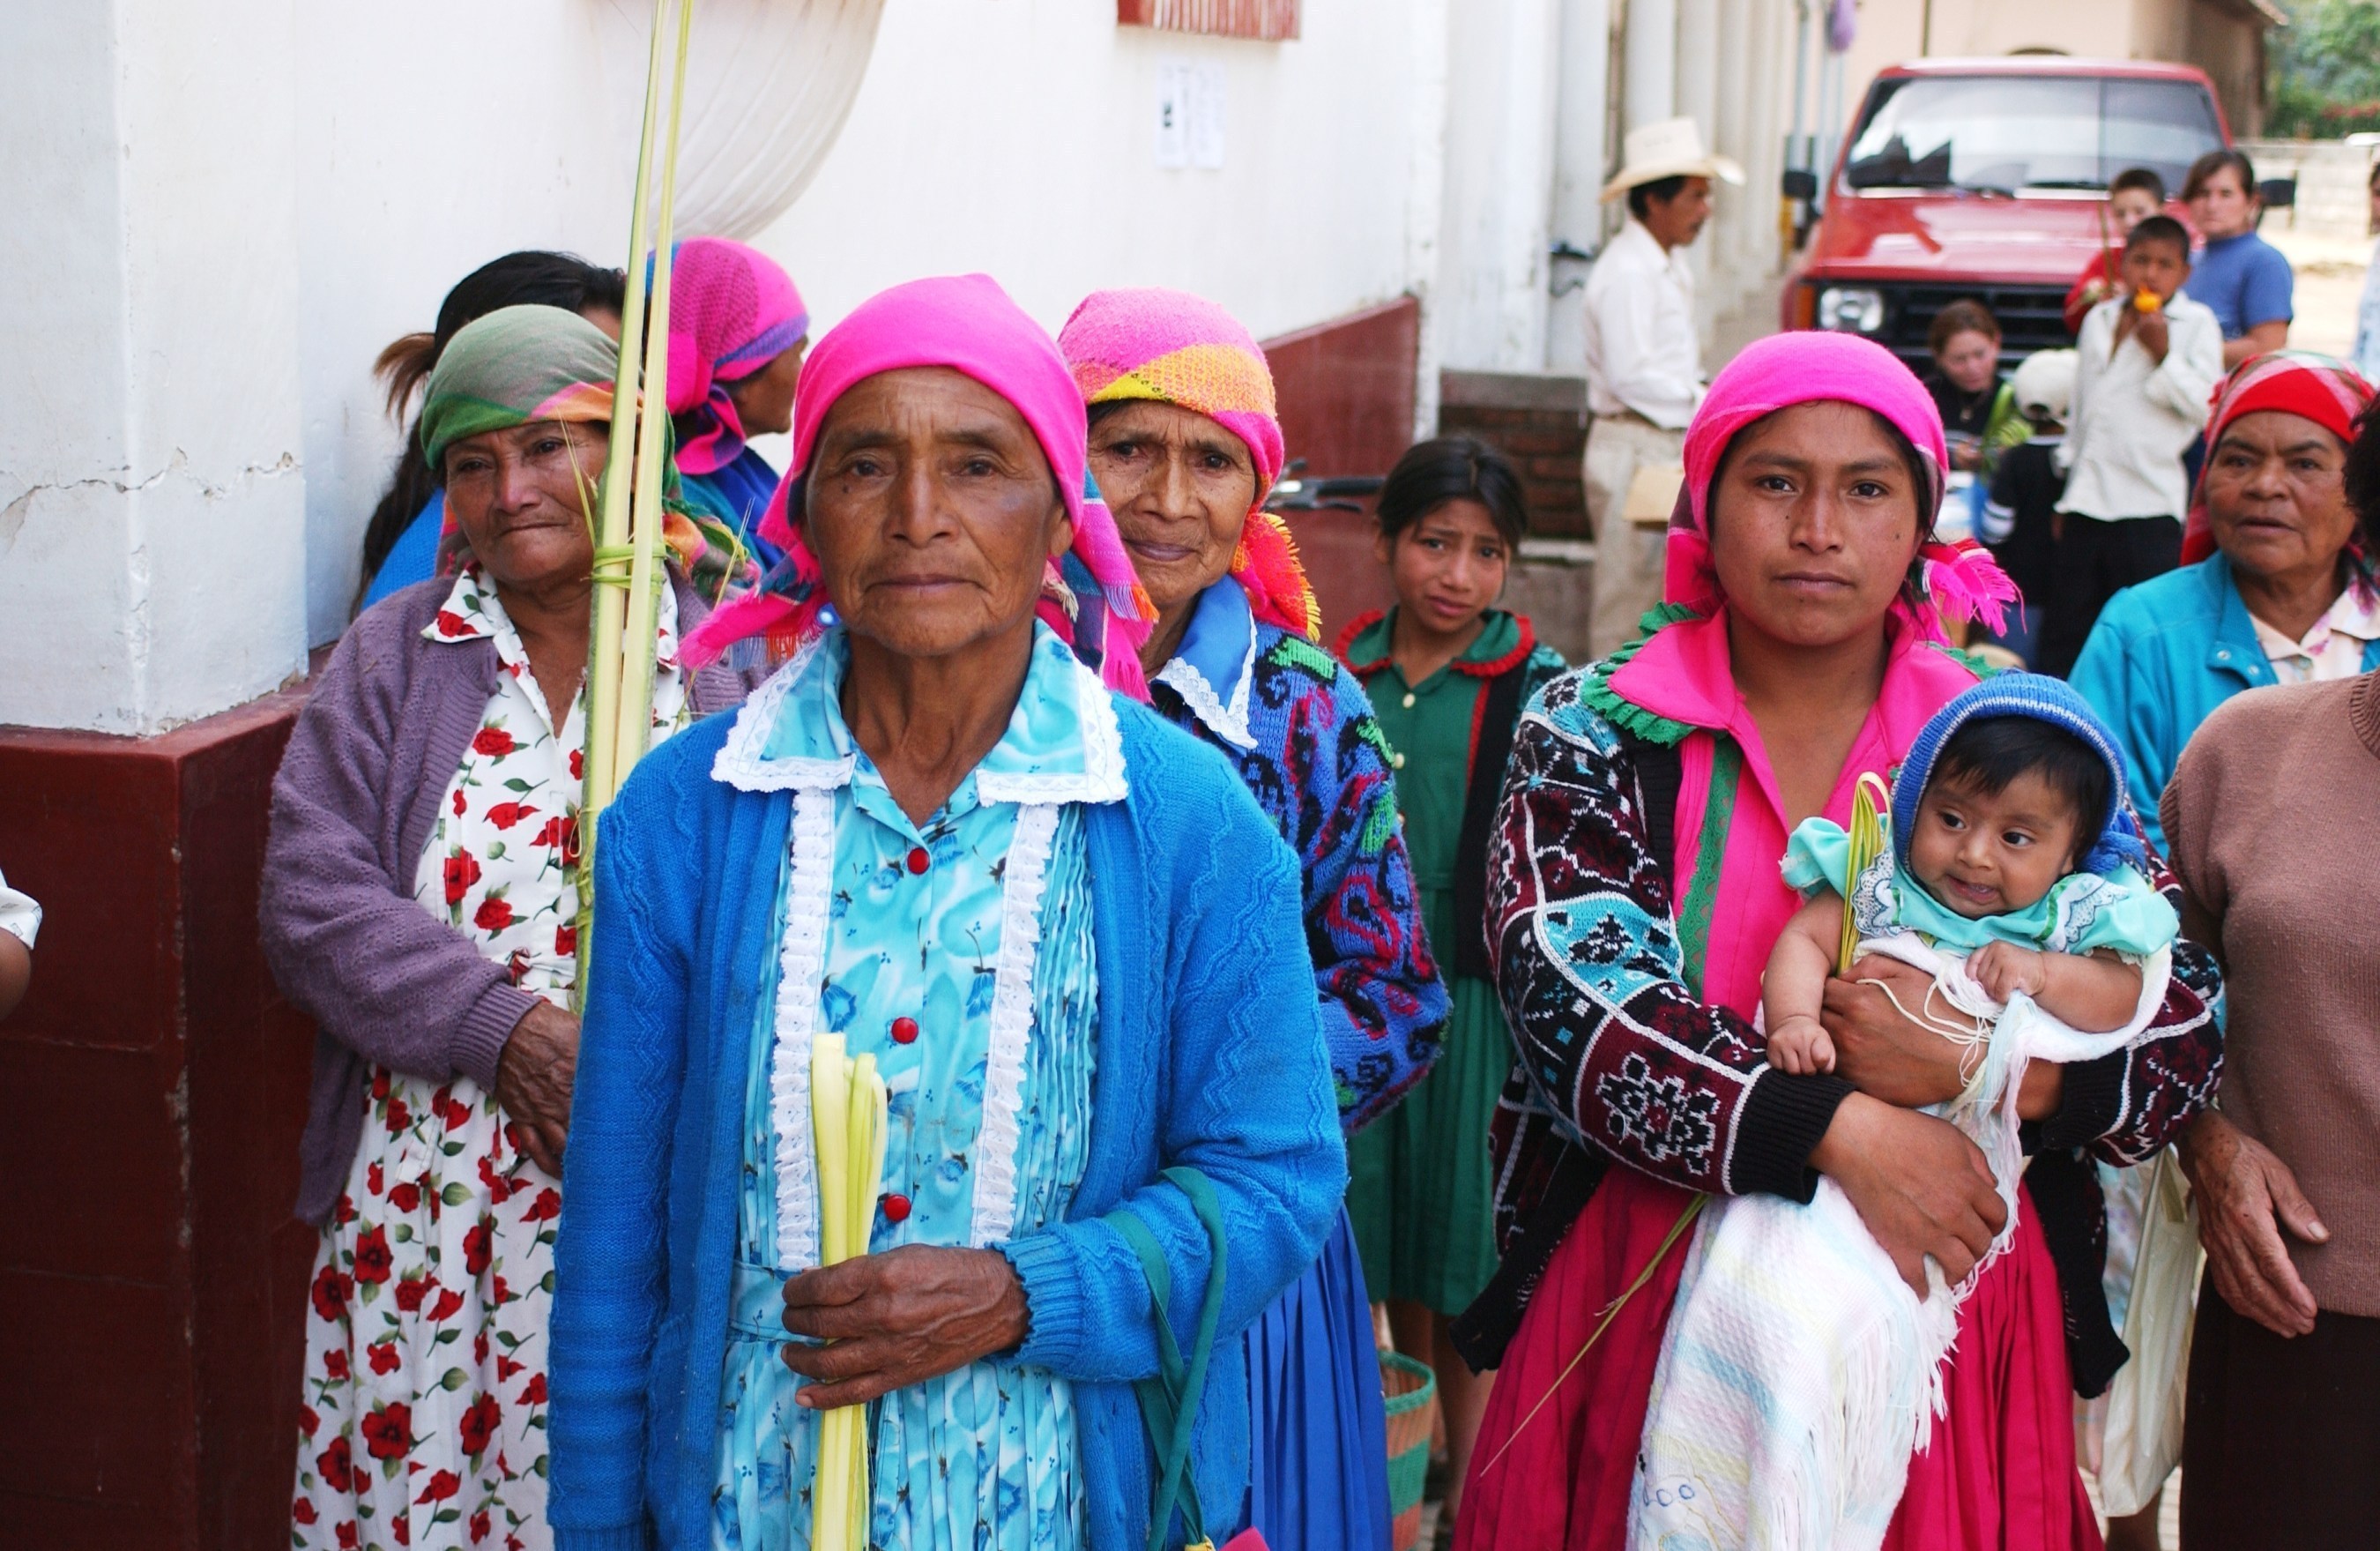 HONDURAS: A world of Lenca culture to discover, says CANTURH